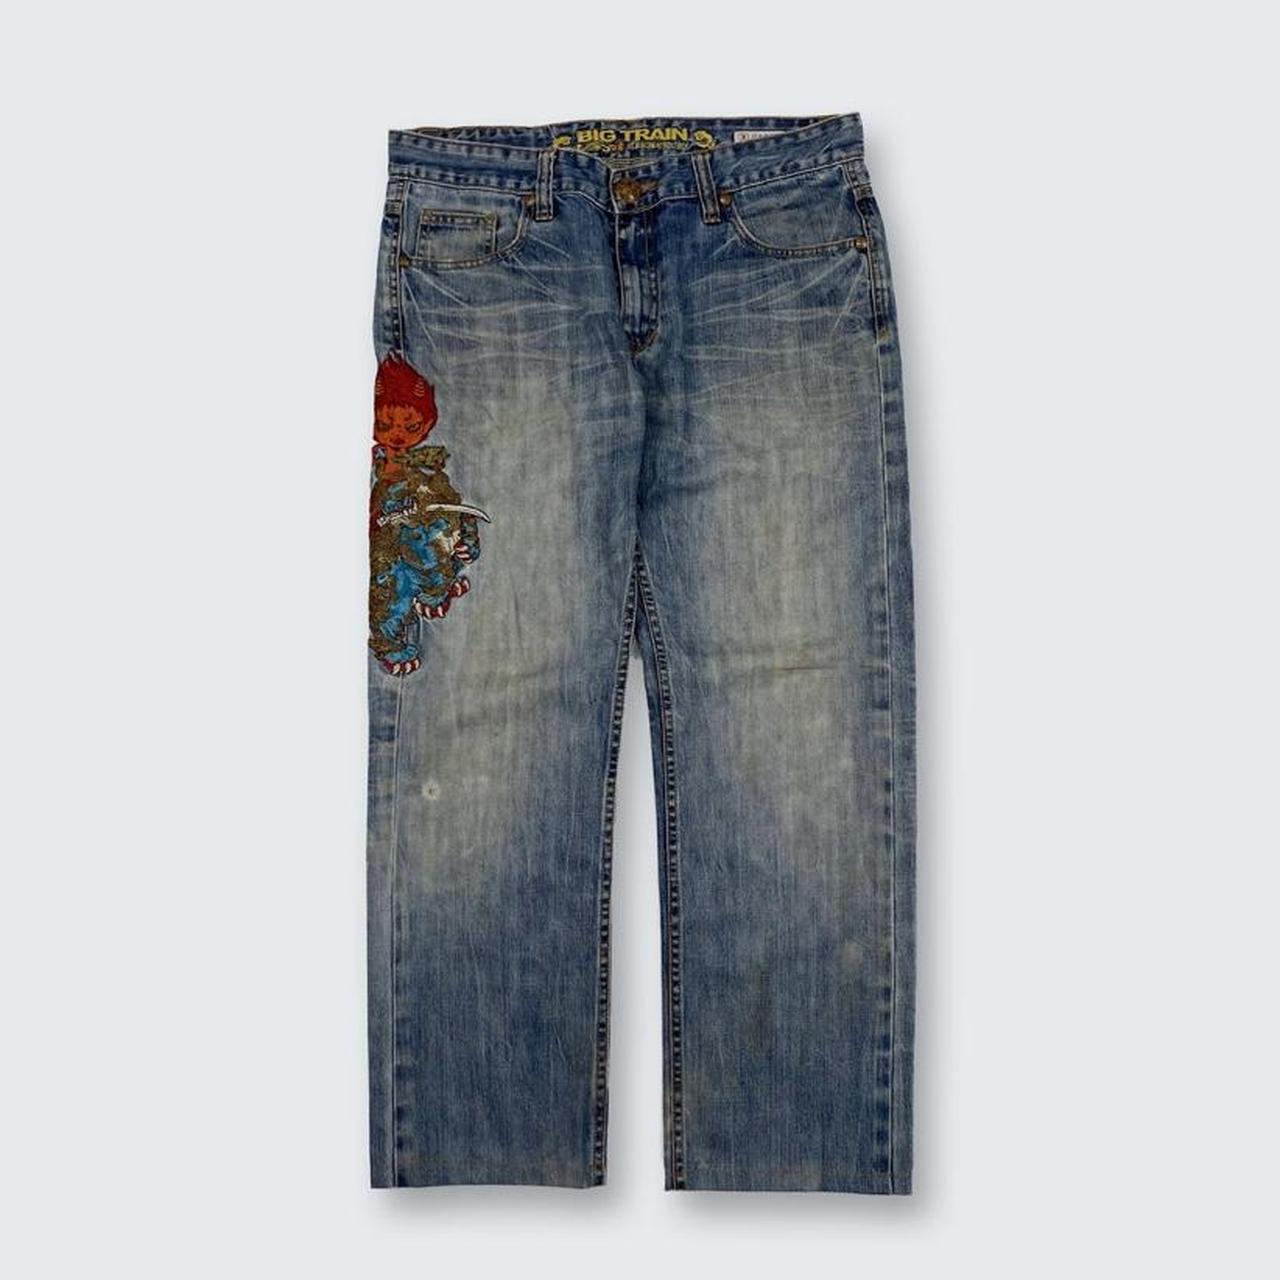 Authentic Vintage Japanese Denim Jeans  (34")